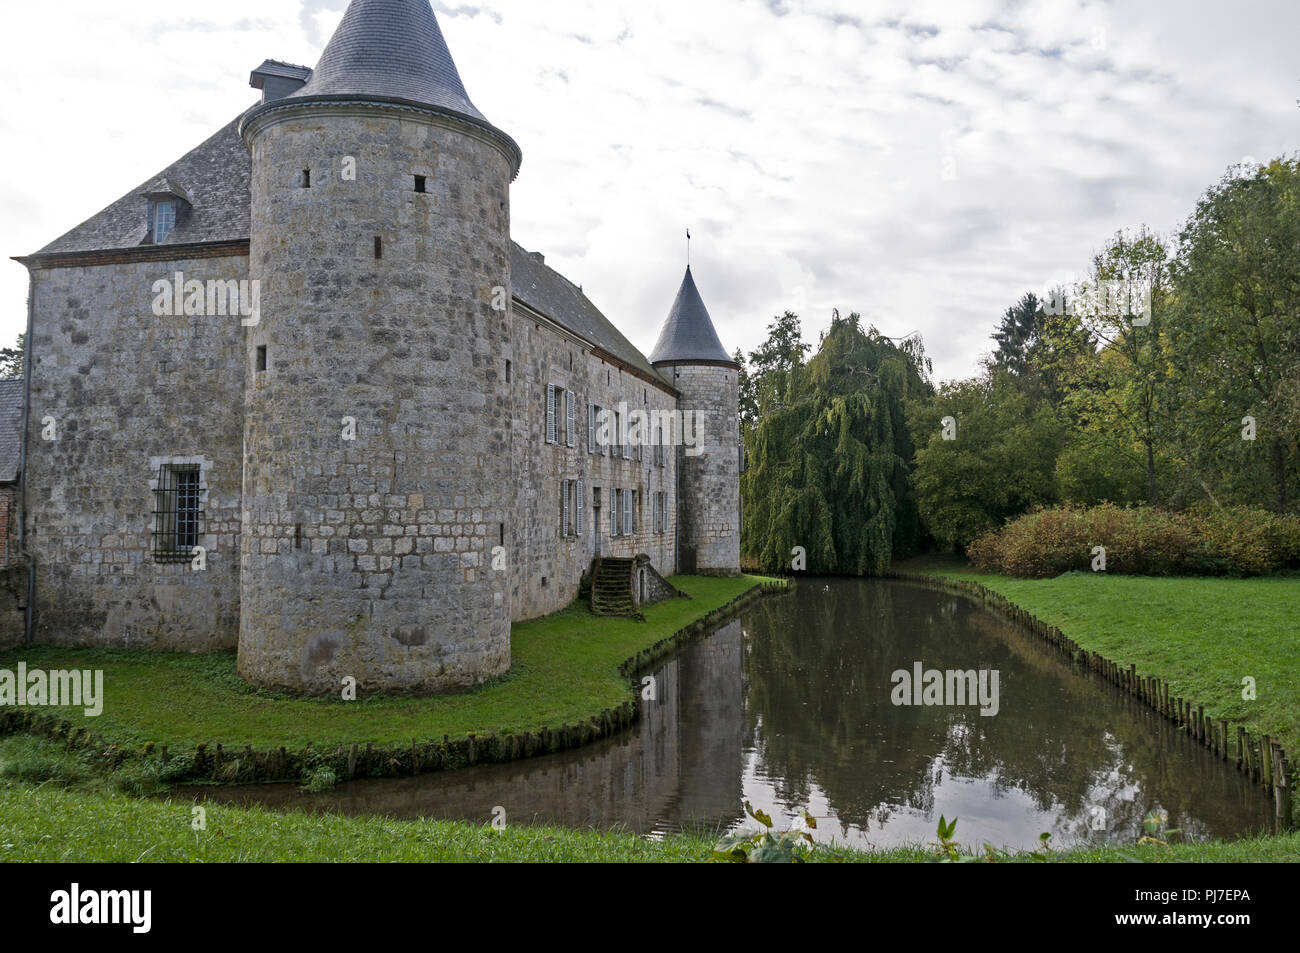 Ein eigenes Haus ähnelt einem kleinen Schloss, umgeben von einem Wassergraben bei 'La Cour-des-Prés' in Rumigny Dorf in den Ardennen im Norden Frankreichs Stockfoto